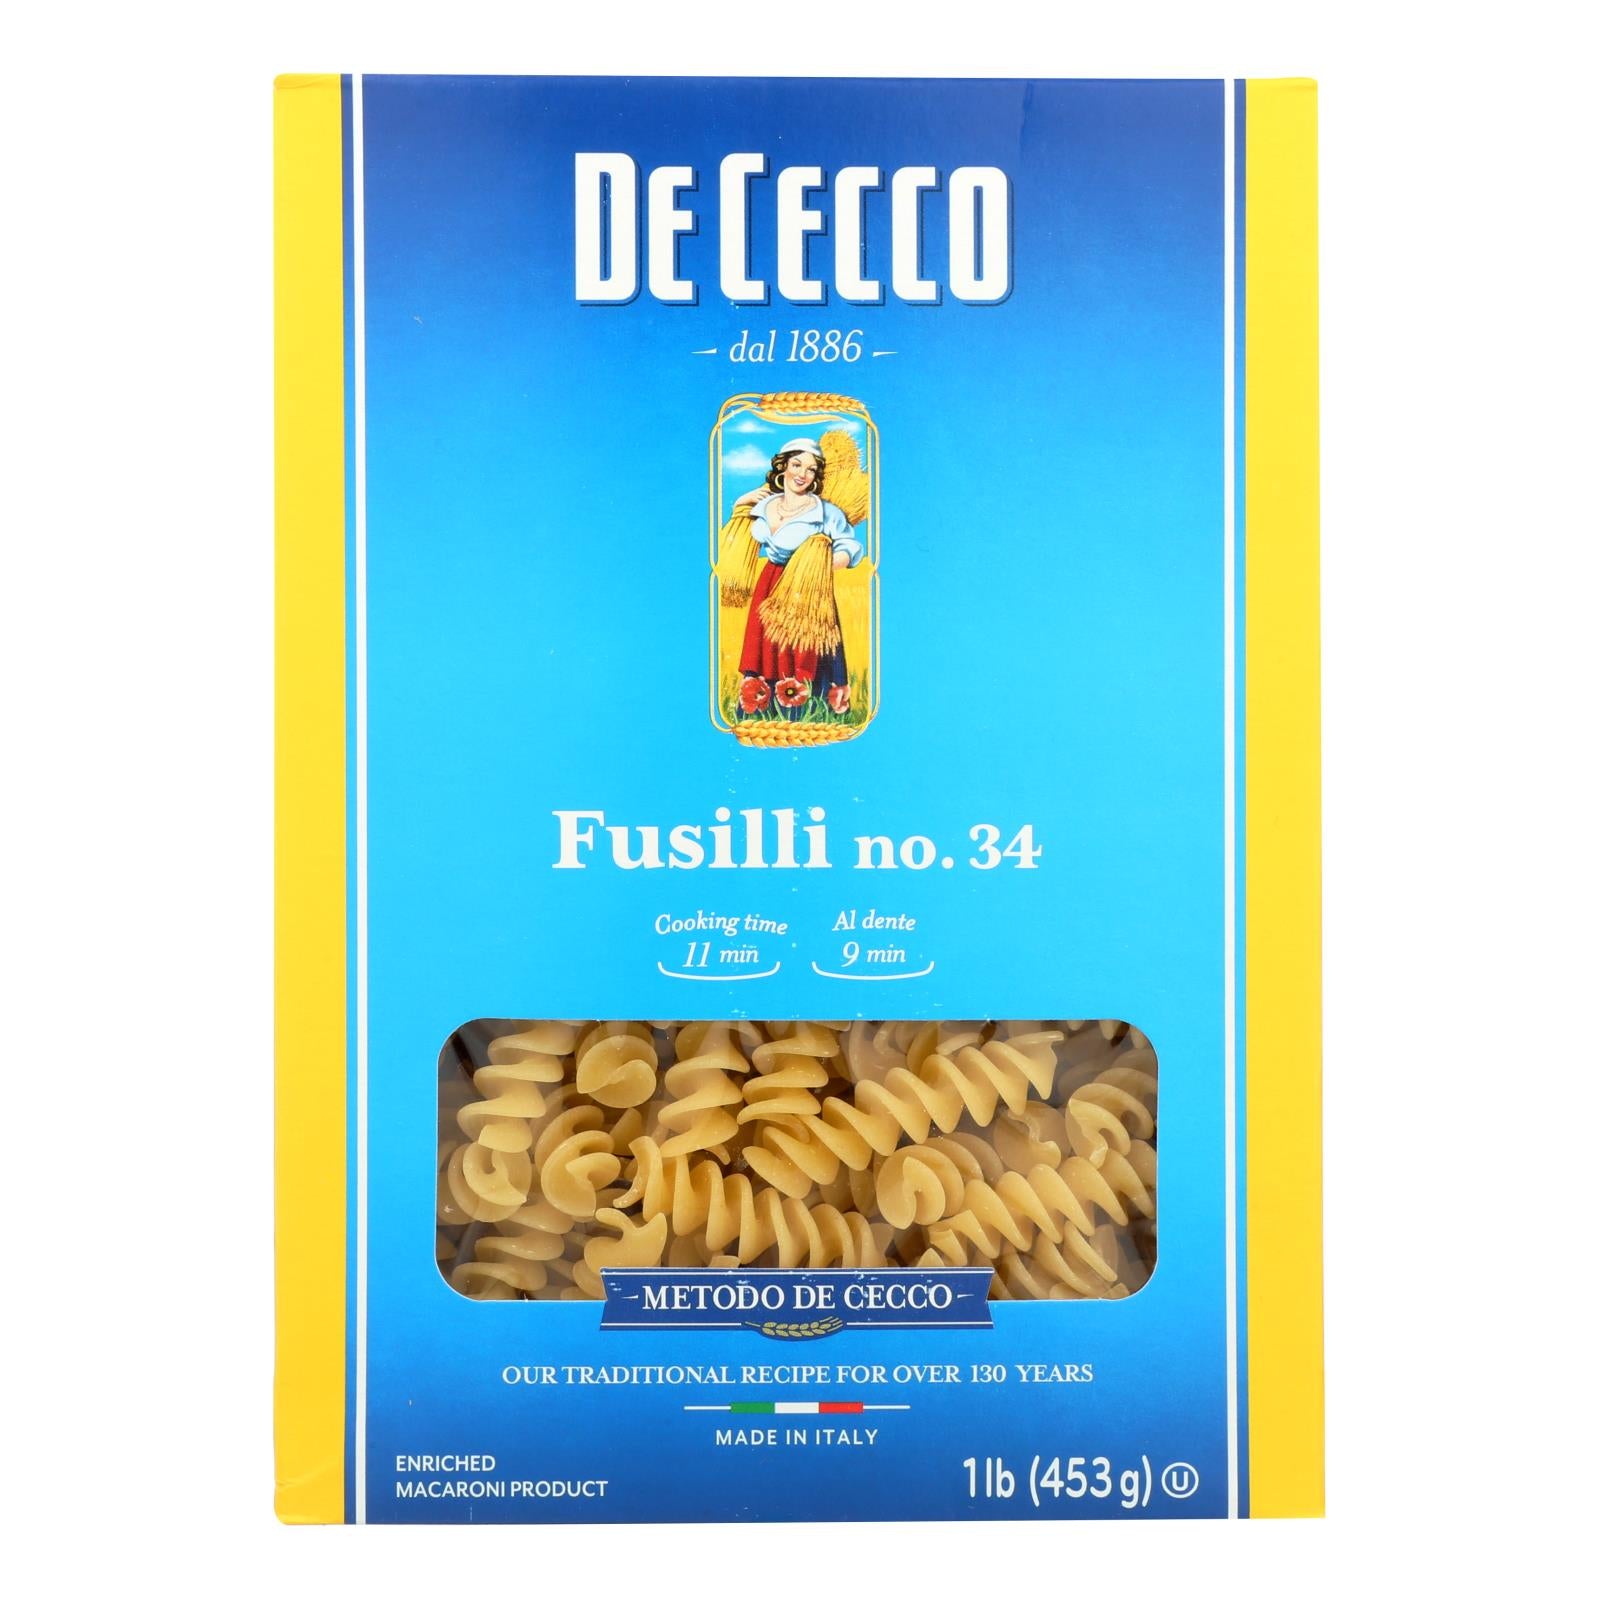 De Cecco Pasta - Pasta - Fusilli - Case of 12 - 16 oz